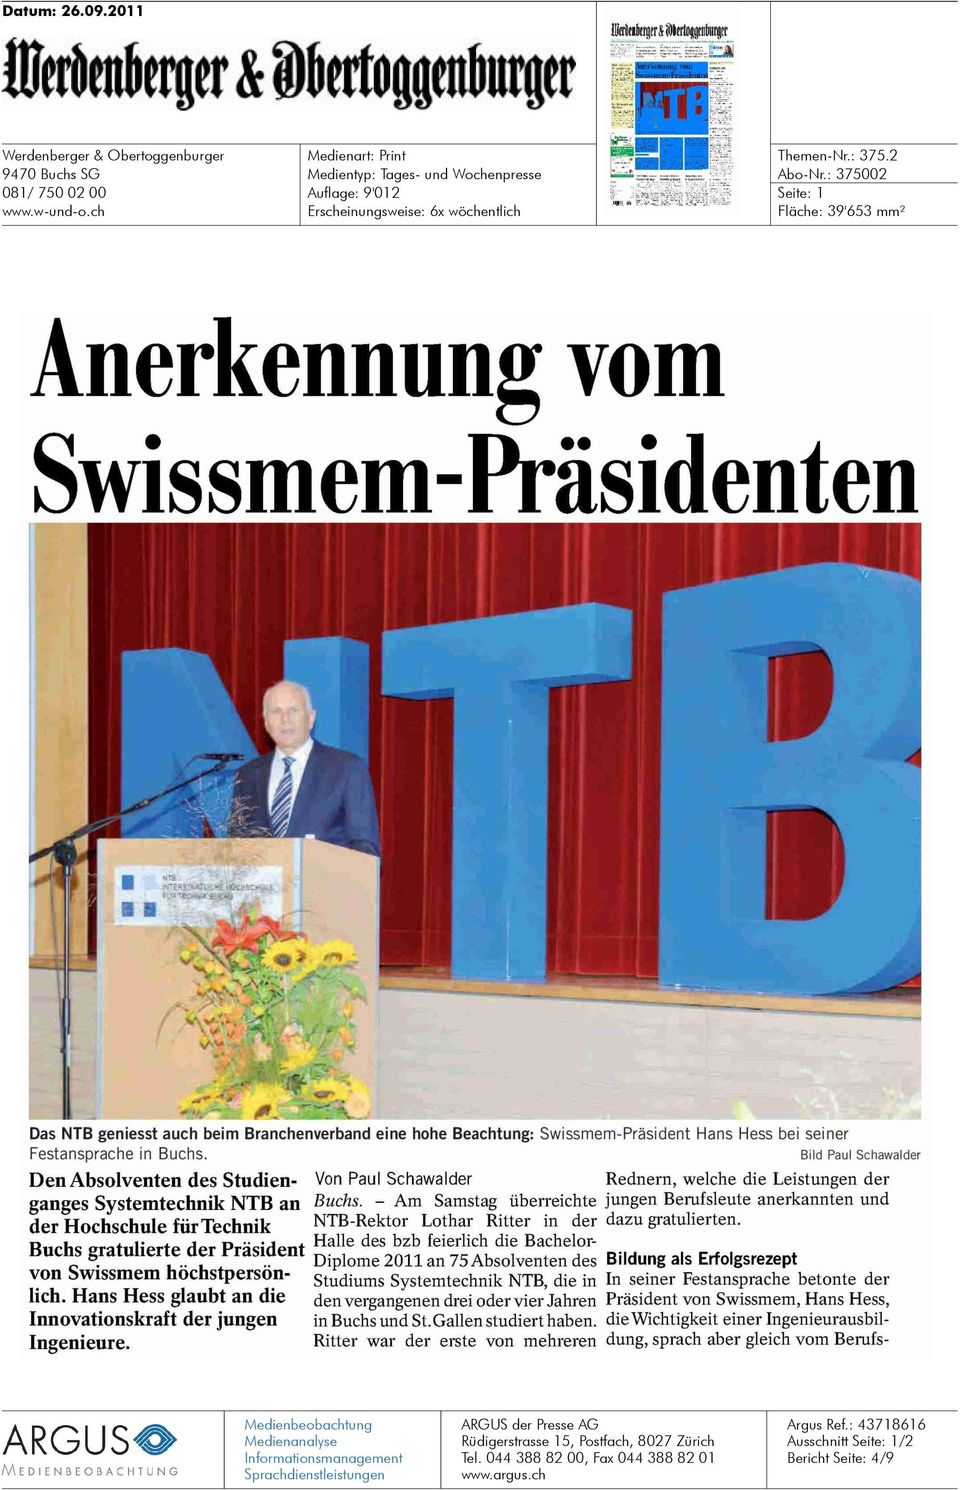 Bild Paul Schawalder Den Absolventen des Studienganges Systemtechnik NTB an der Hochschule für Technik Buchs gratulierte der Präsident von Swissmem höchstpersönlich.